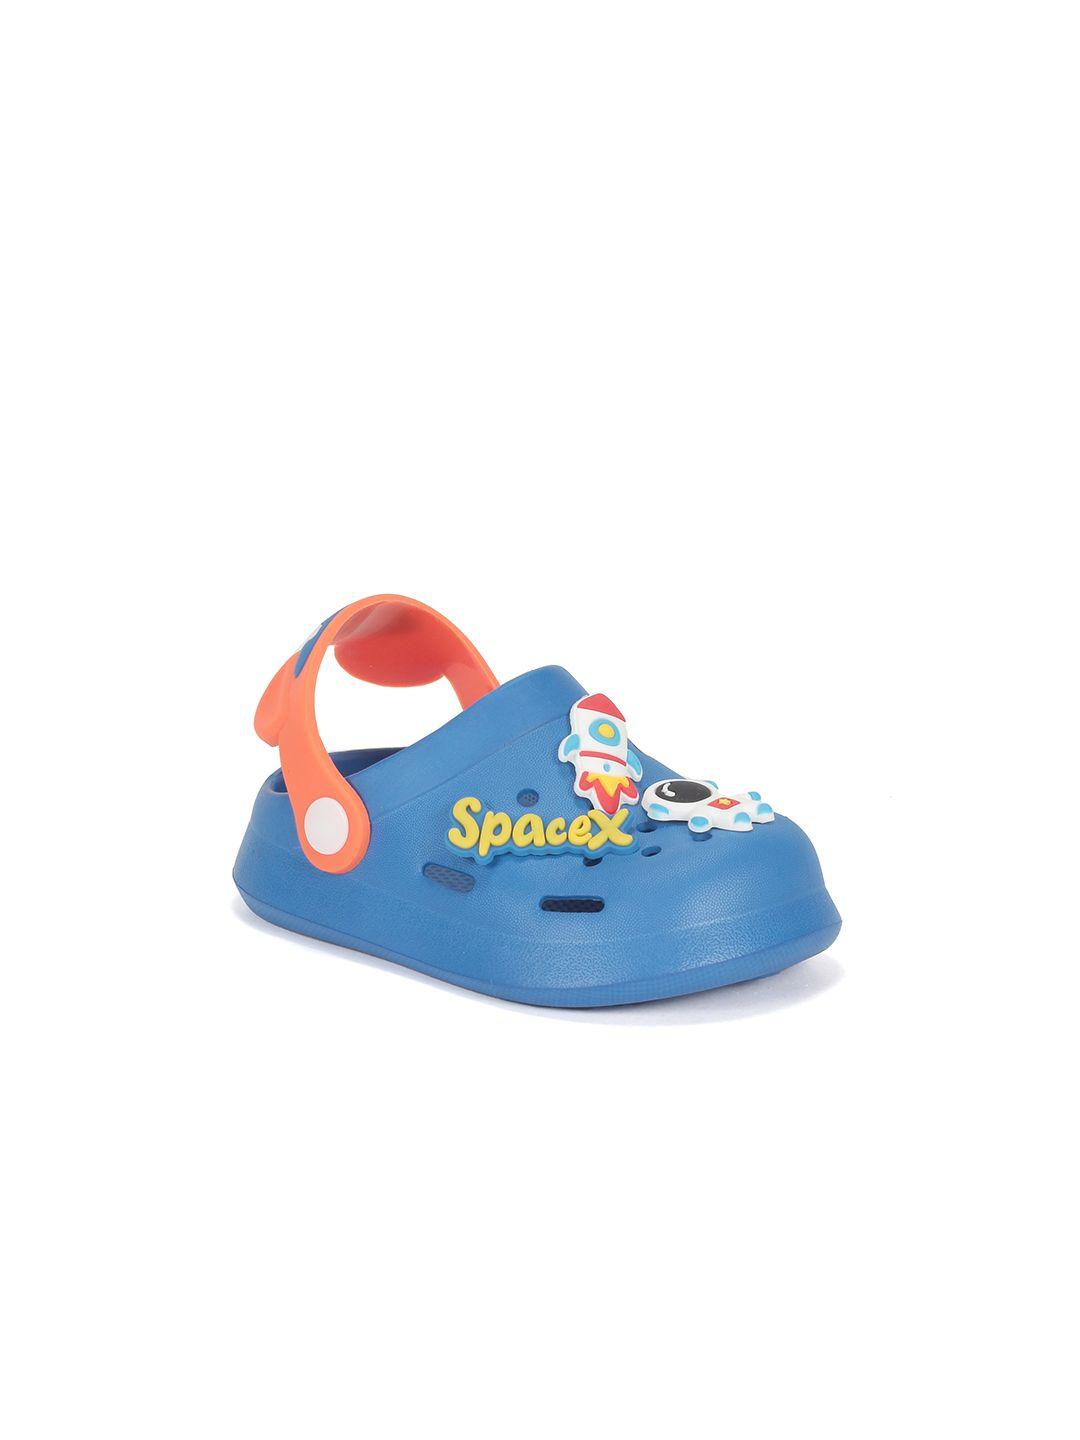 lil lollipop kids applique anti-slip clogs sandals